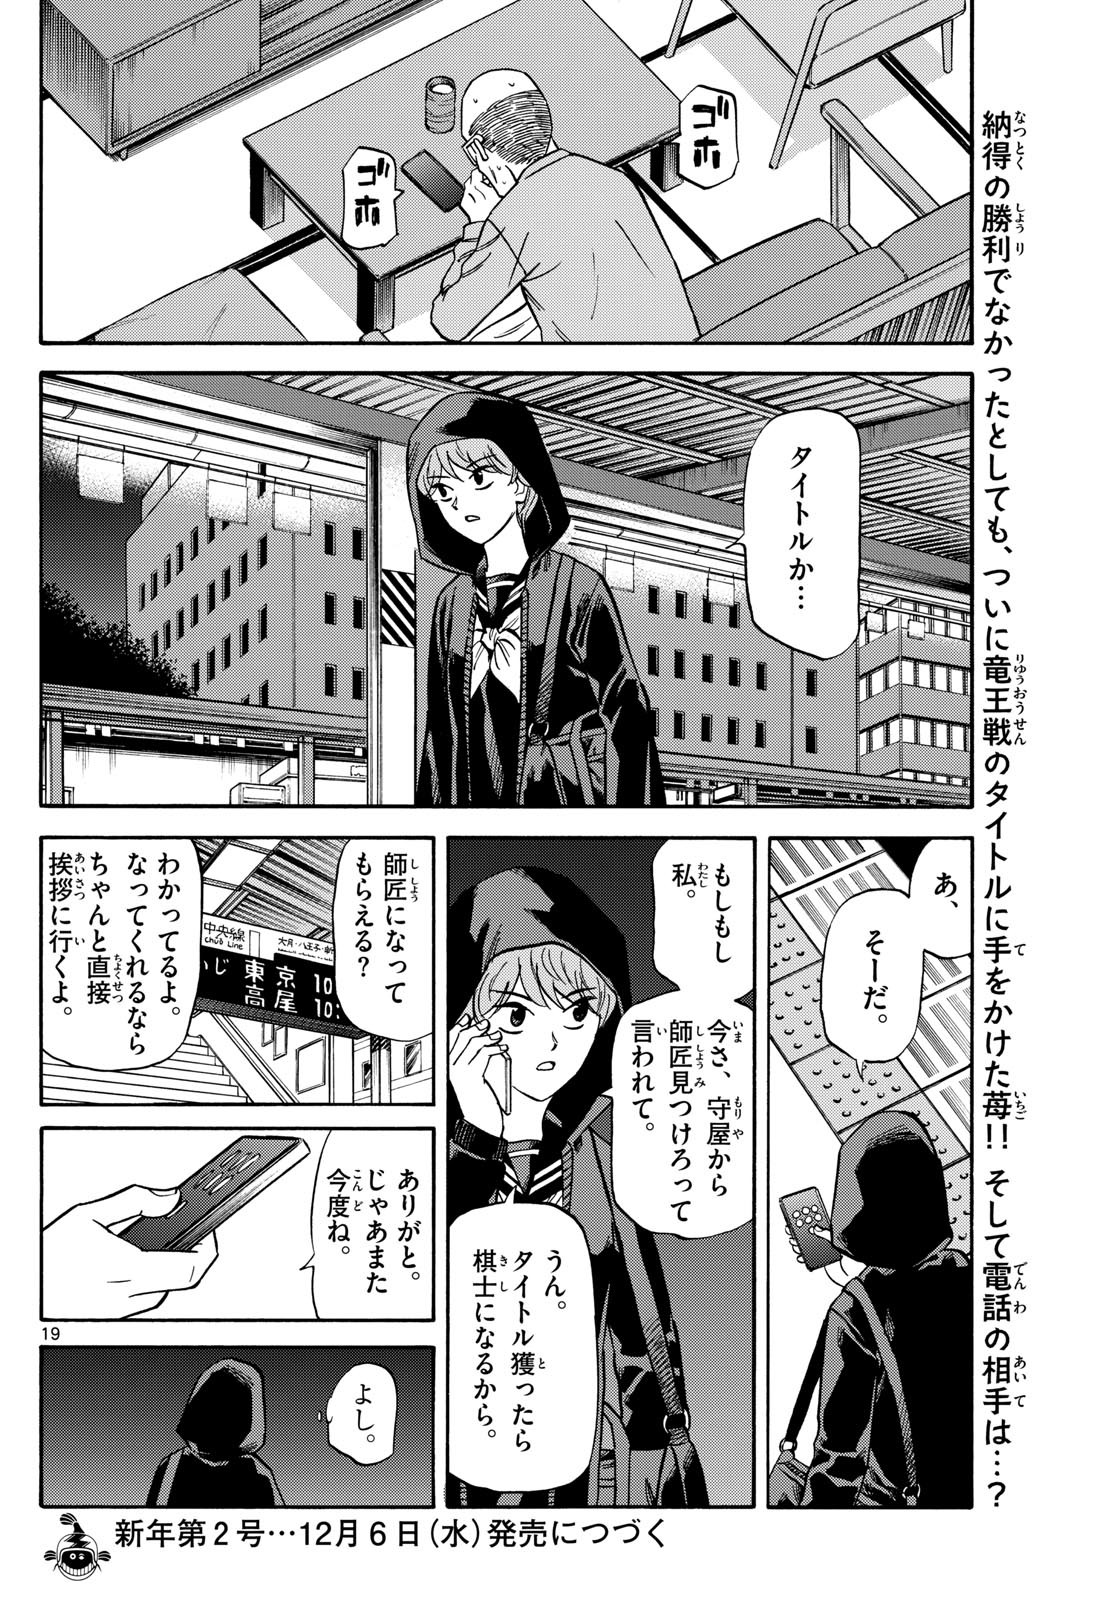 Ryu-to-Ichigo - Chapter 170 - Page 18